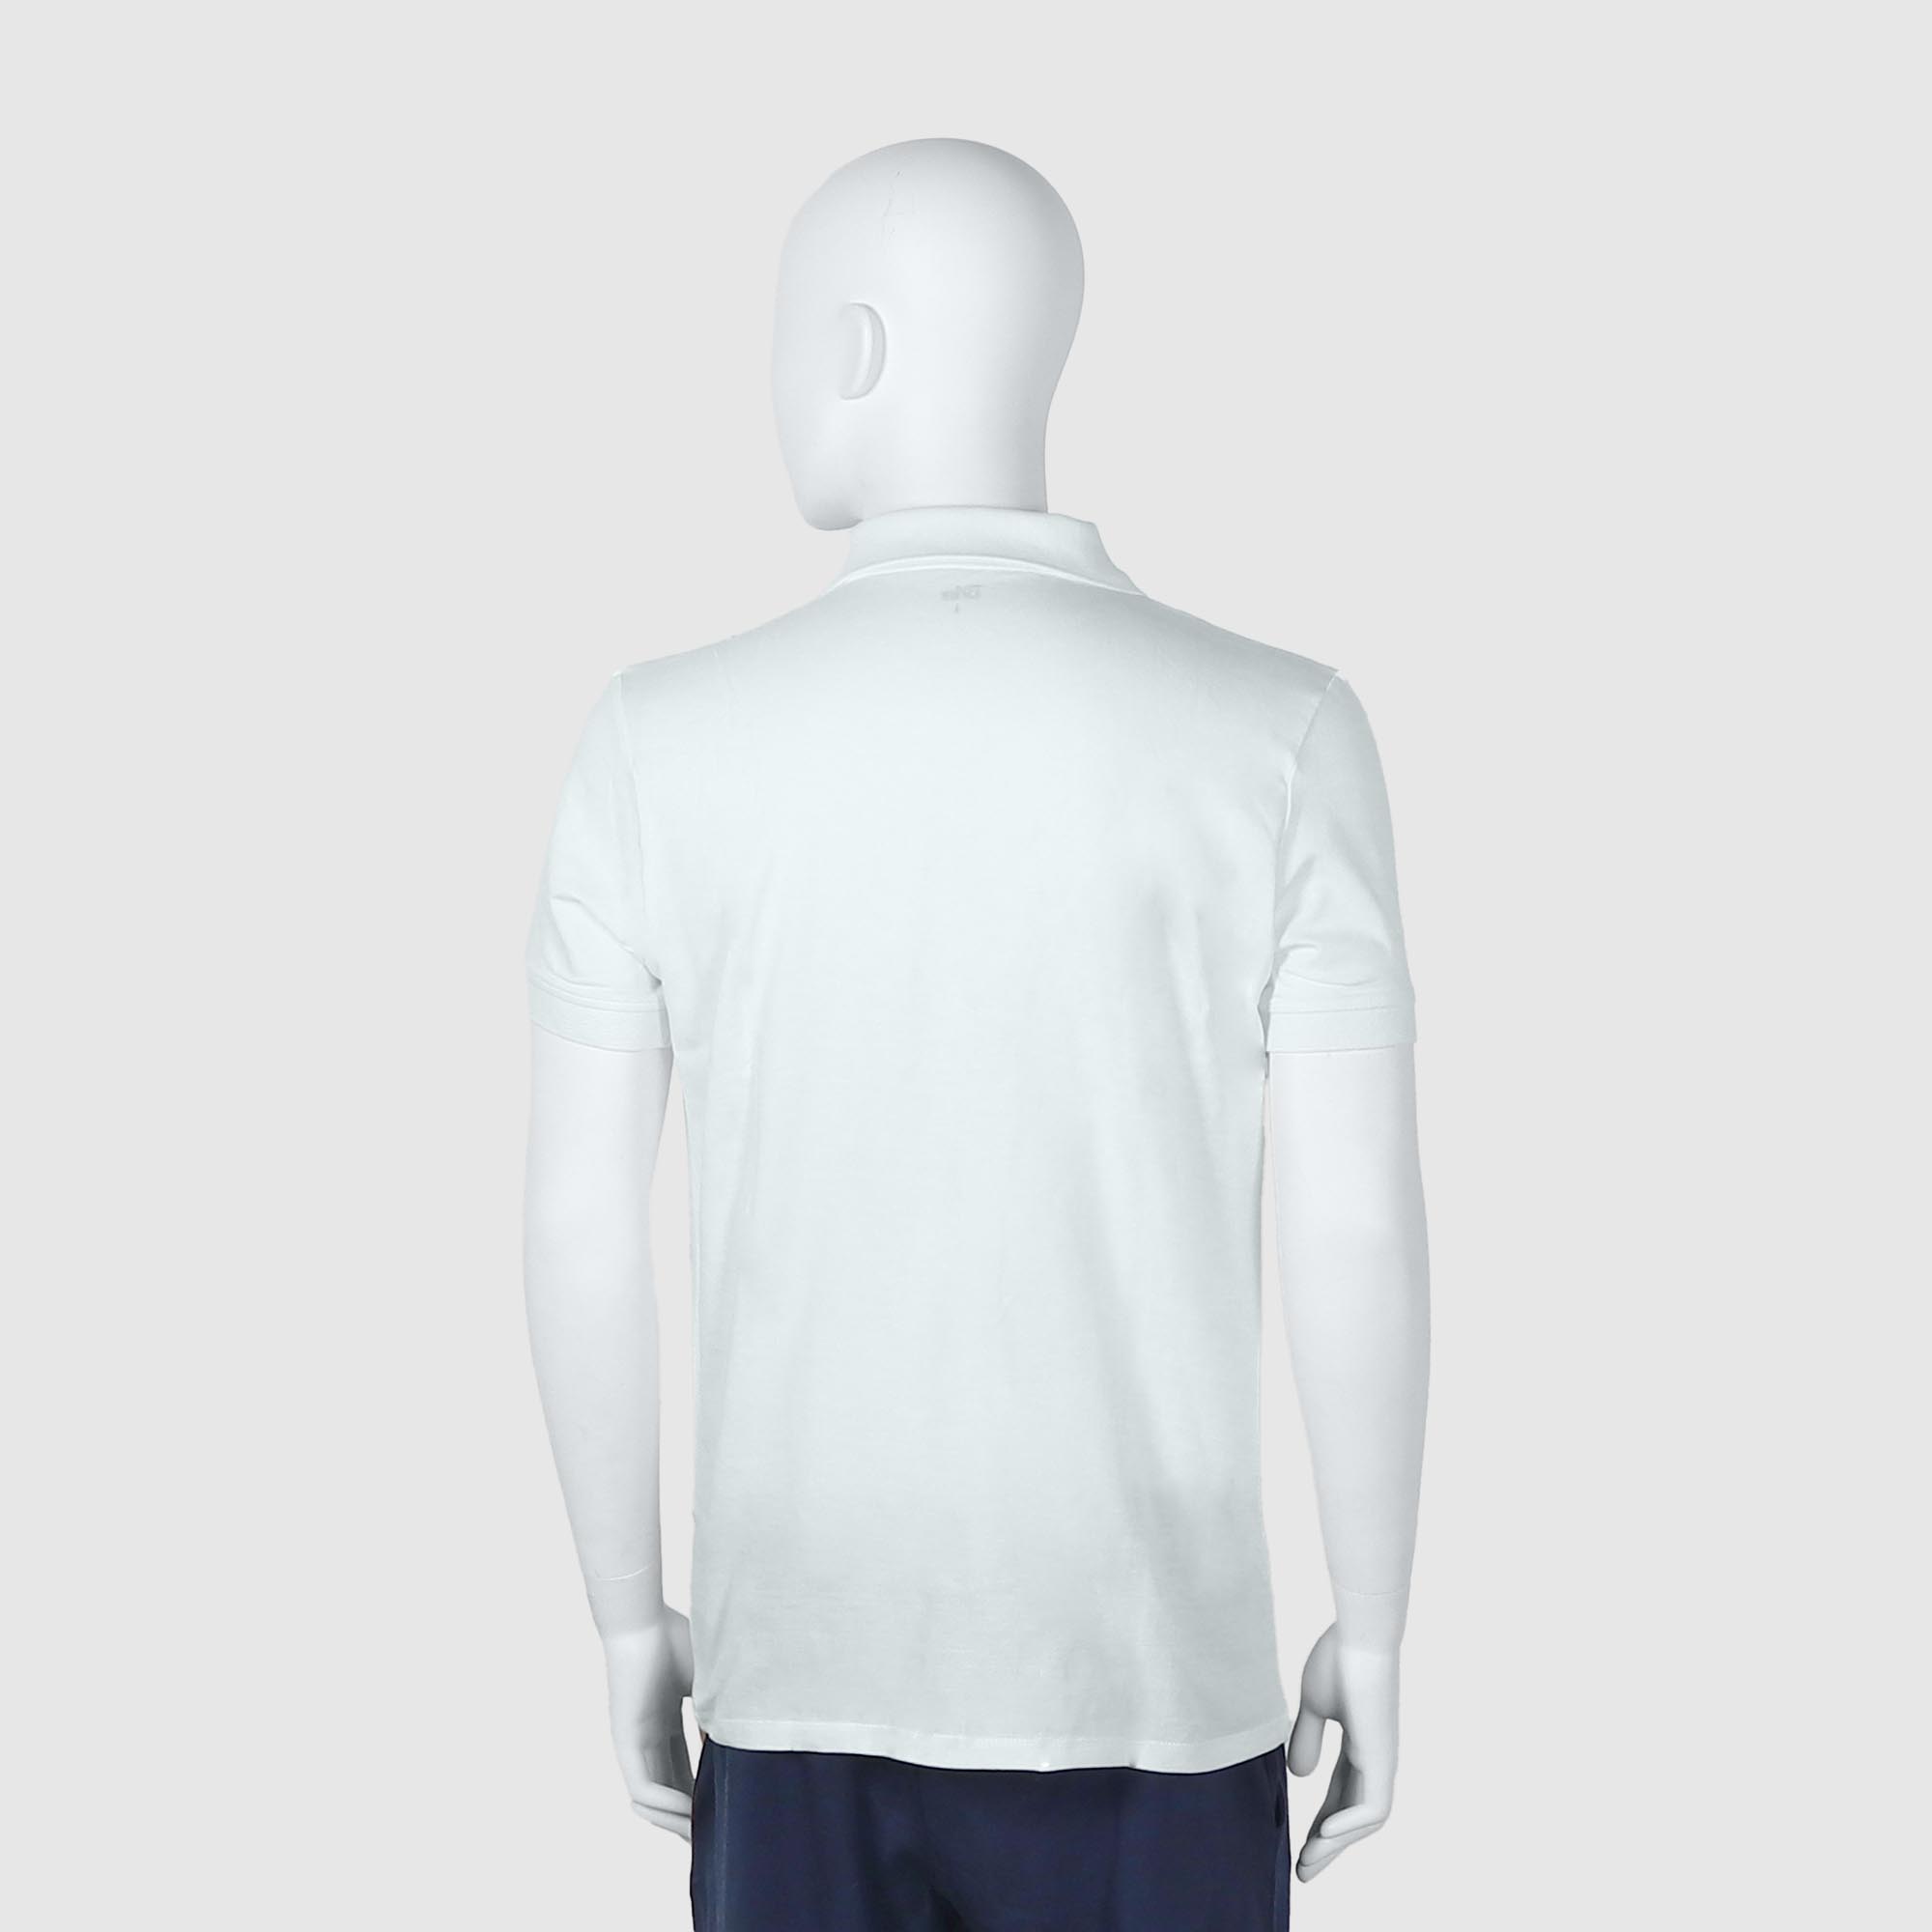 Мужская футболка-поло Diva Teks белая (DTD-07), цвет белый, размер 46-48 - фото 2